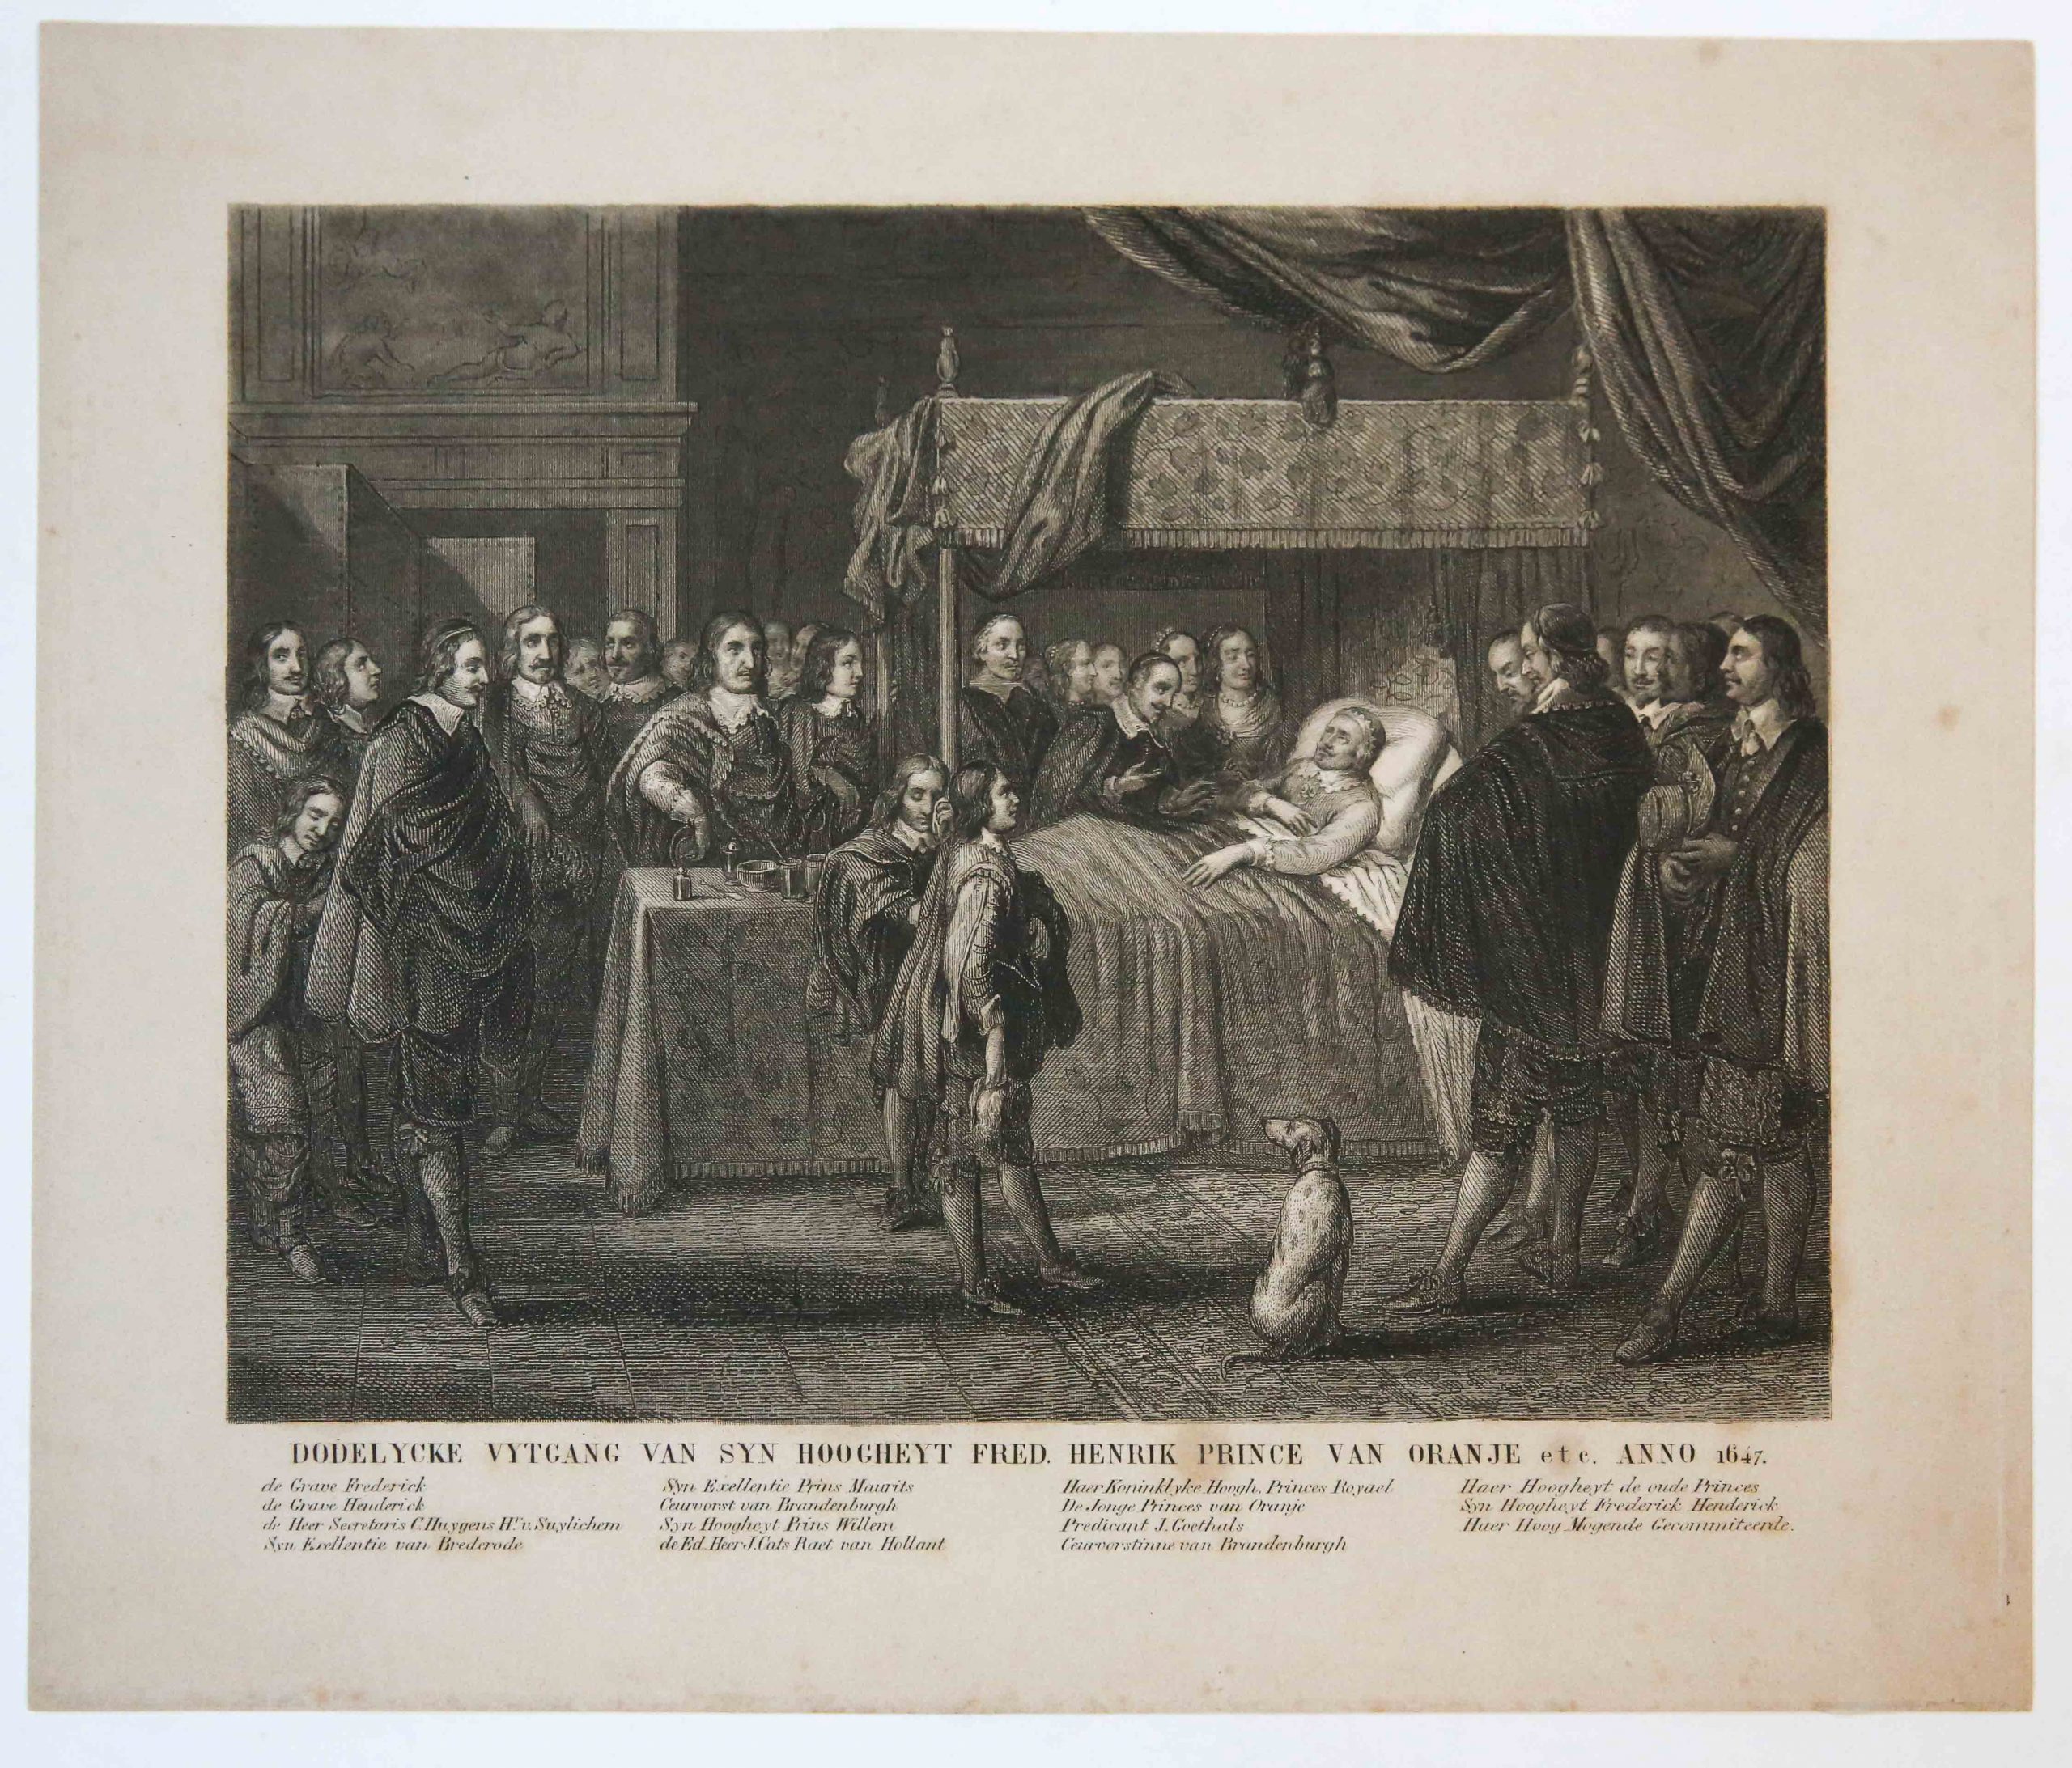 [Original etching/ets] 'Dodelycke uytgang van syn hoogheyt Fred. Henrik prince van Oranje'; death of Frederick Henry, Prince of Orange, 1647